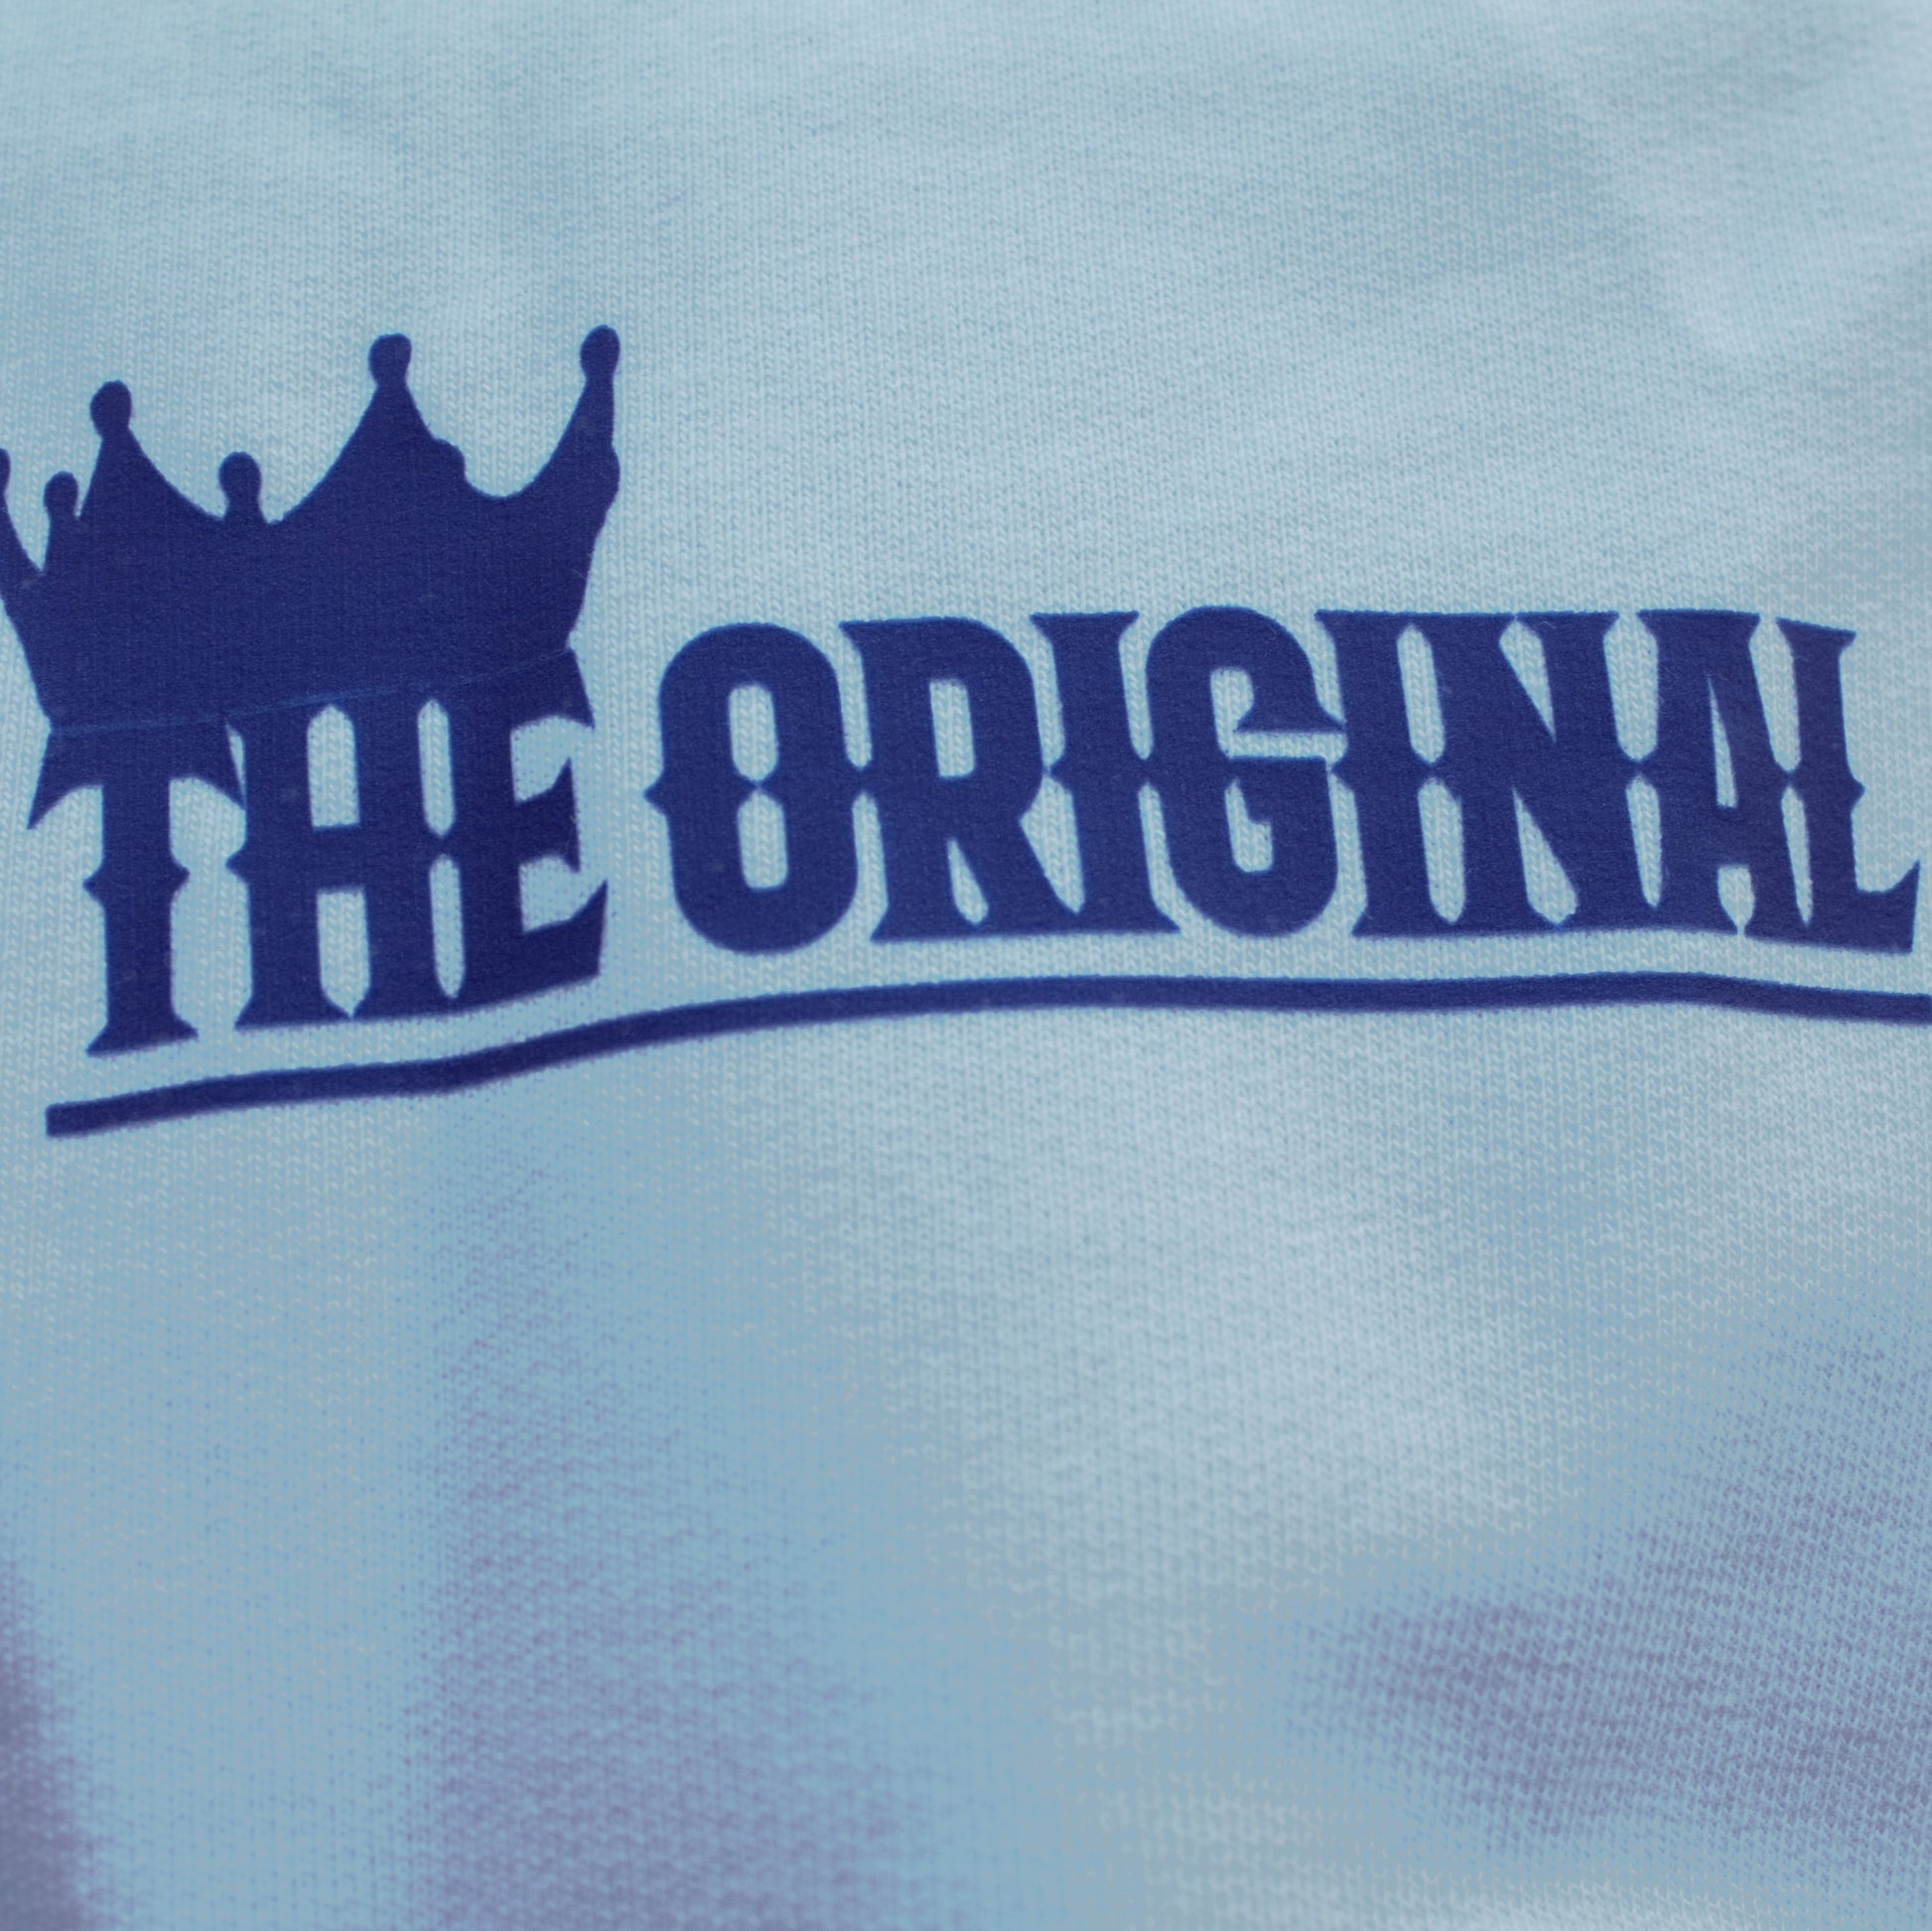 Close up of brand name in blue imprint on the hood of the White COLOR LION hoodie from the-original.shop 

Dette er vores brand navn der er printet i blåt på hood af hoodien, hvor der samtidigt er printet vores COLOR LION.